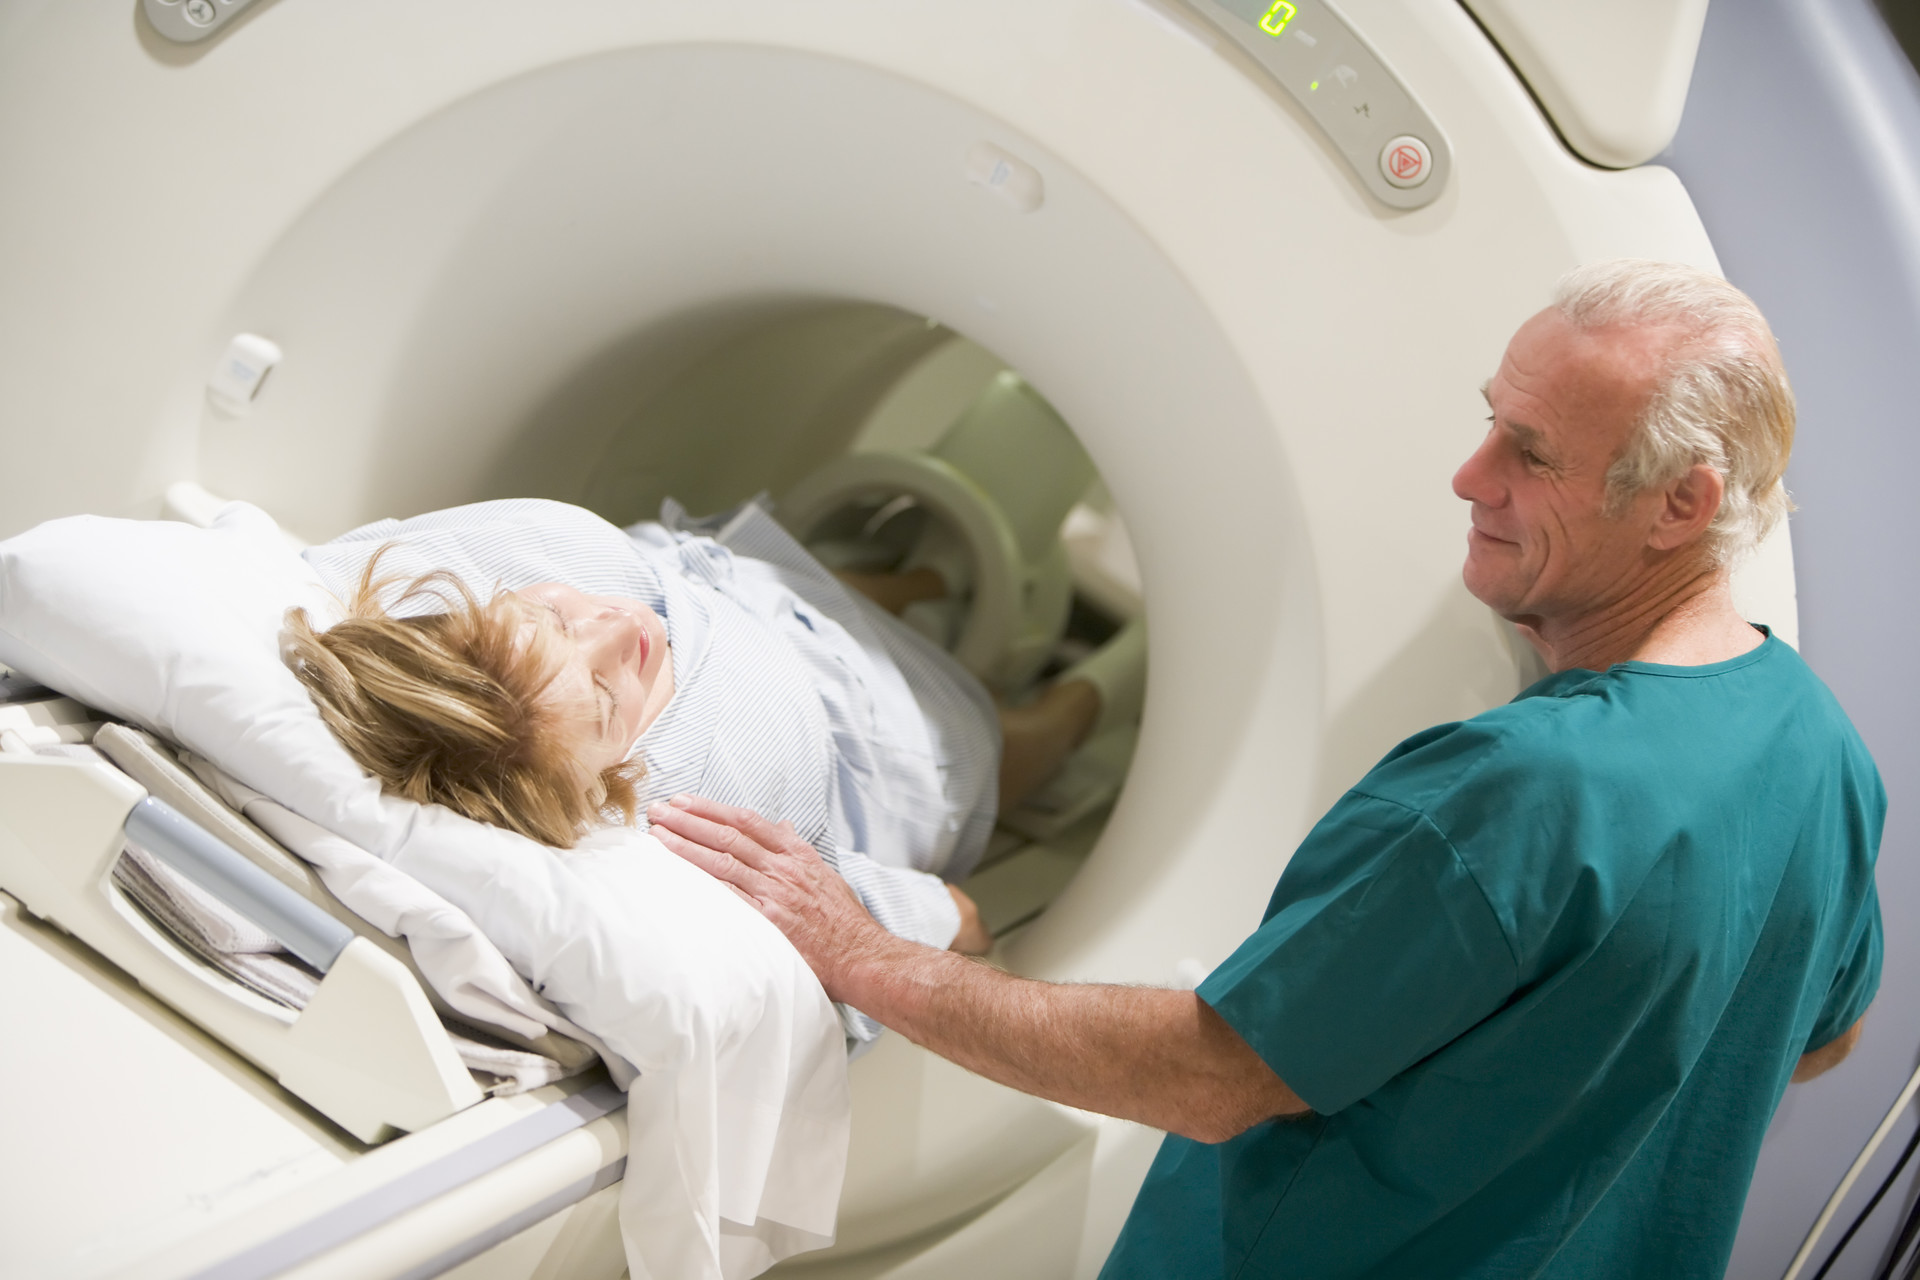 CT scan, xray, imaging